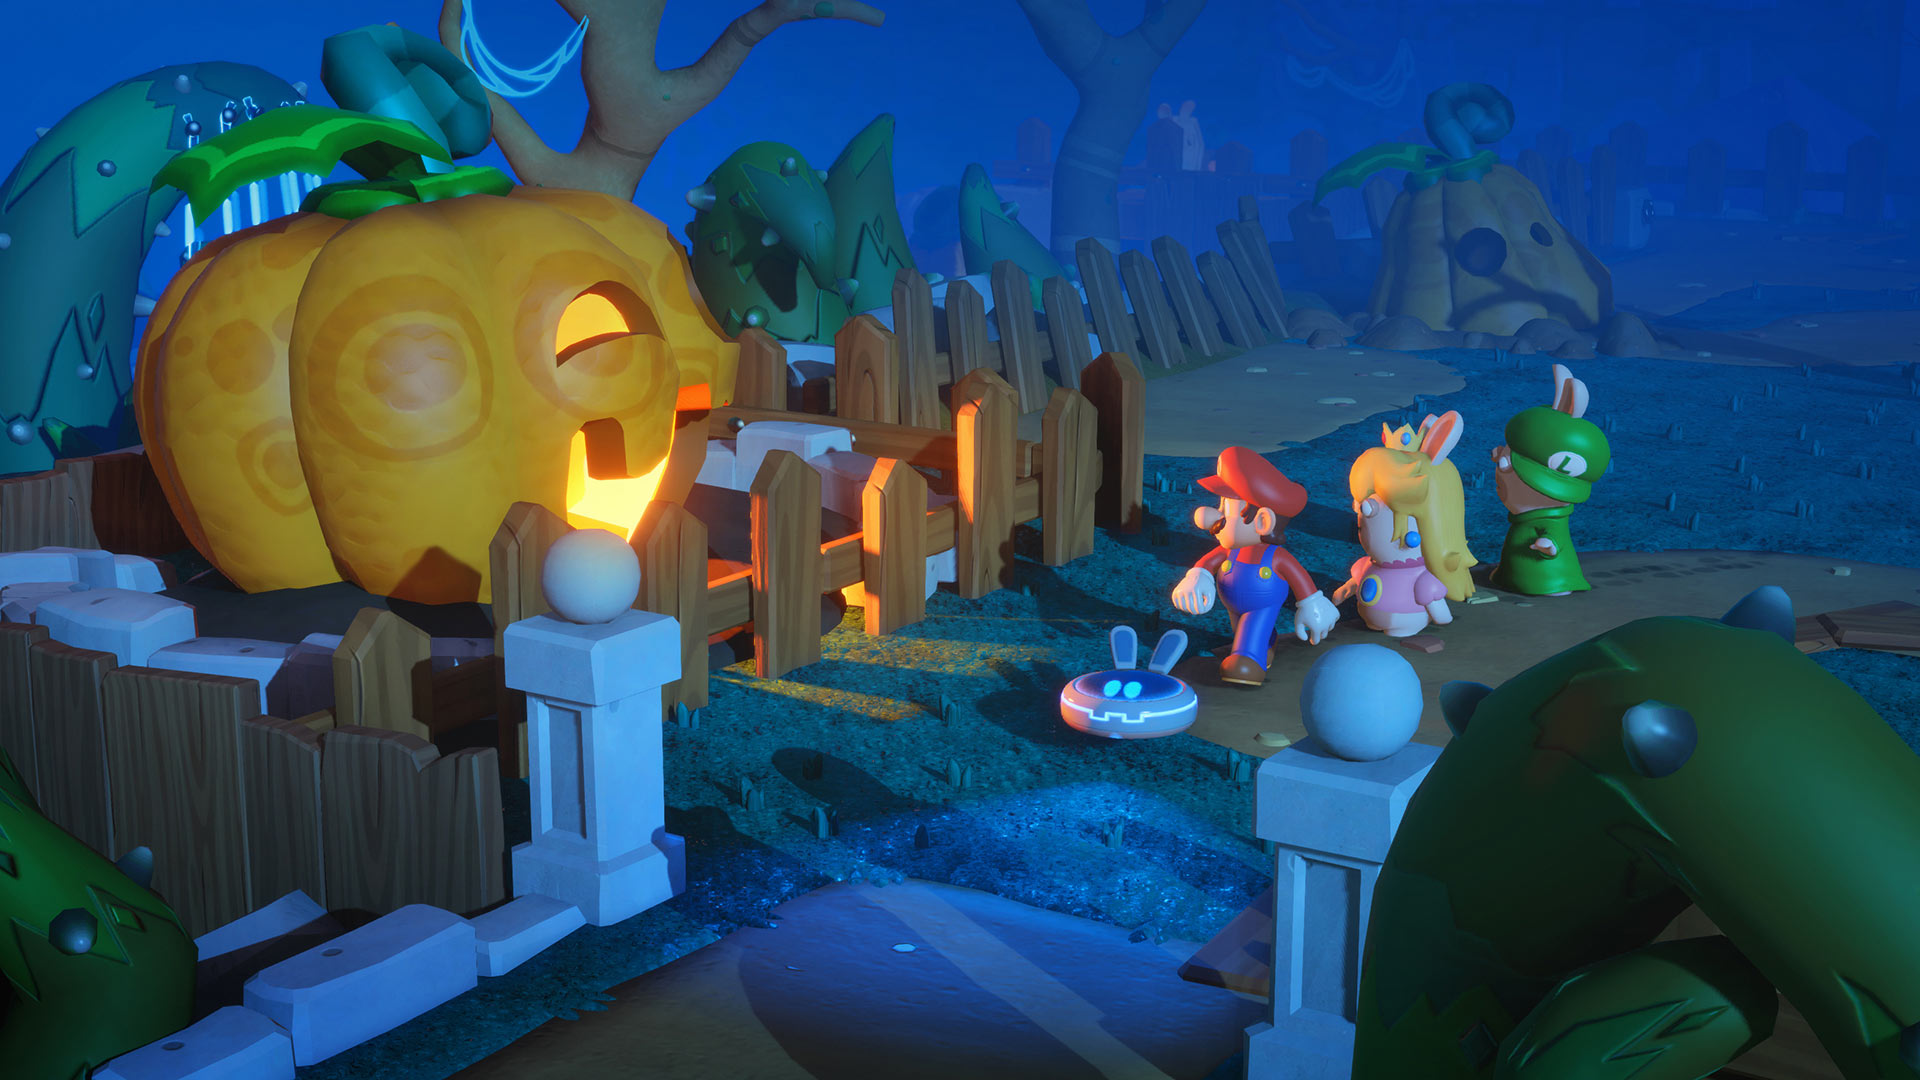 E3 2017: Mario + Rabbids Kingdom Battle Collector's Edition Announced